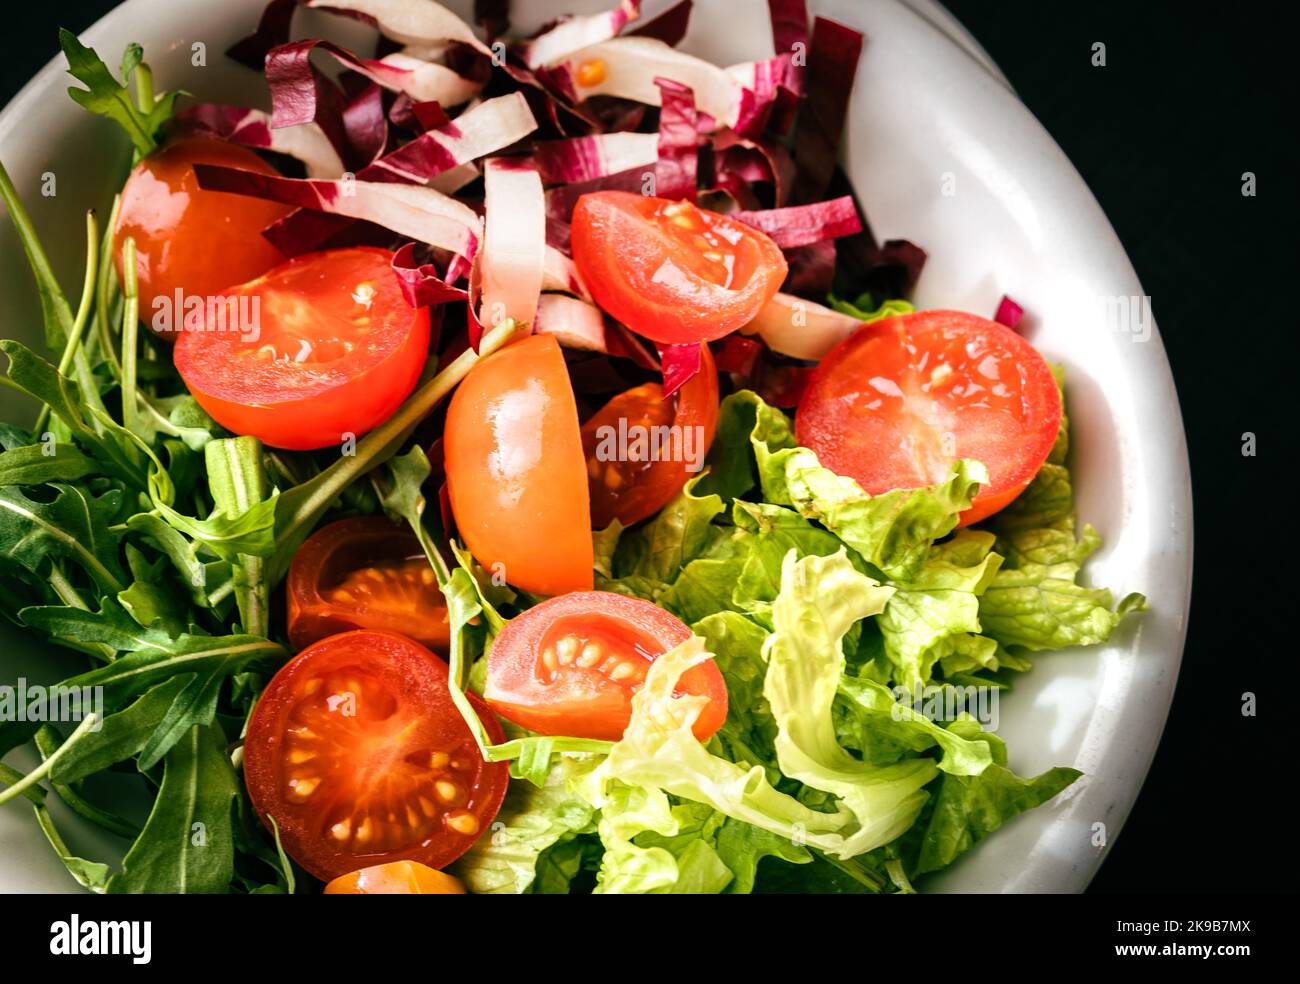 Salade mixte avec laitue, tomates et feuilles de rucola fraîches. Plat végétarien. Banque D'Images